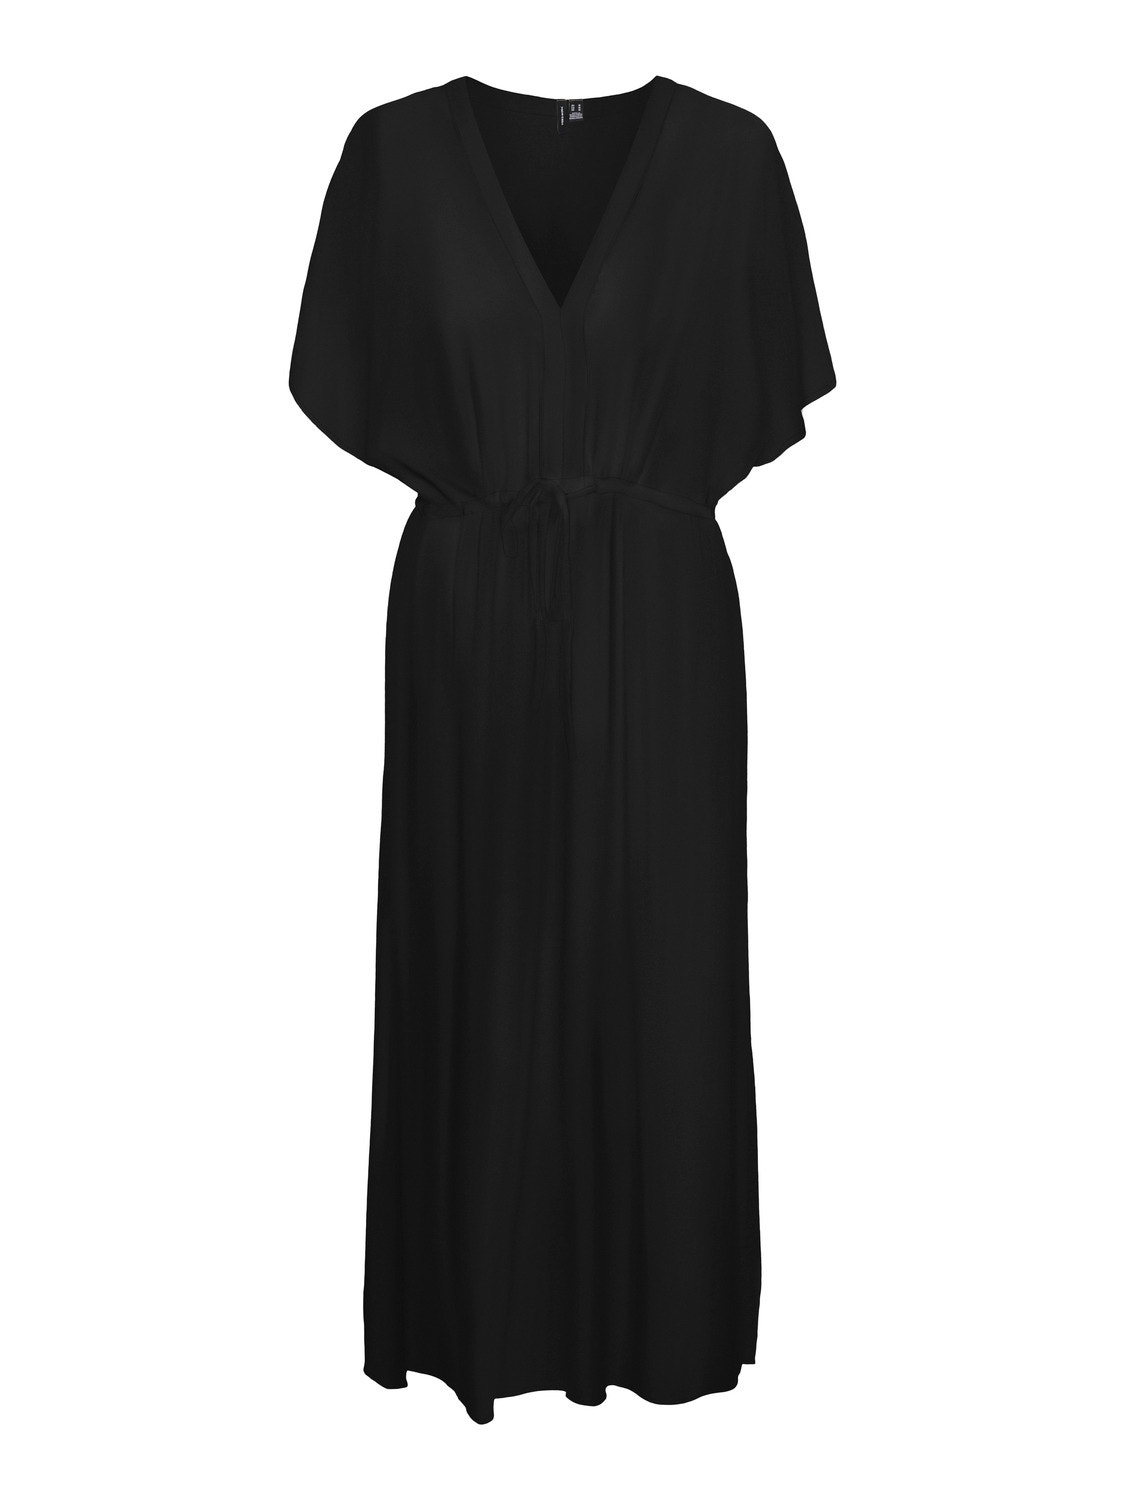 Vero Moda VMMENNY Long dress -Black - 10303701